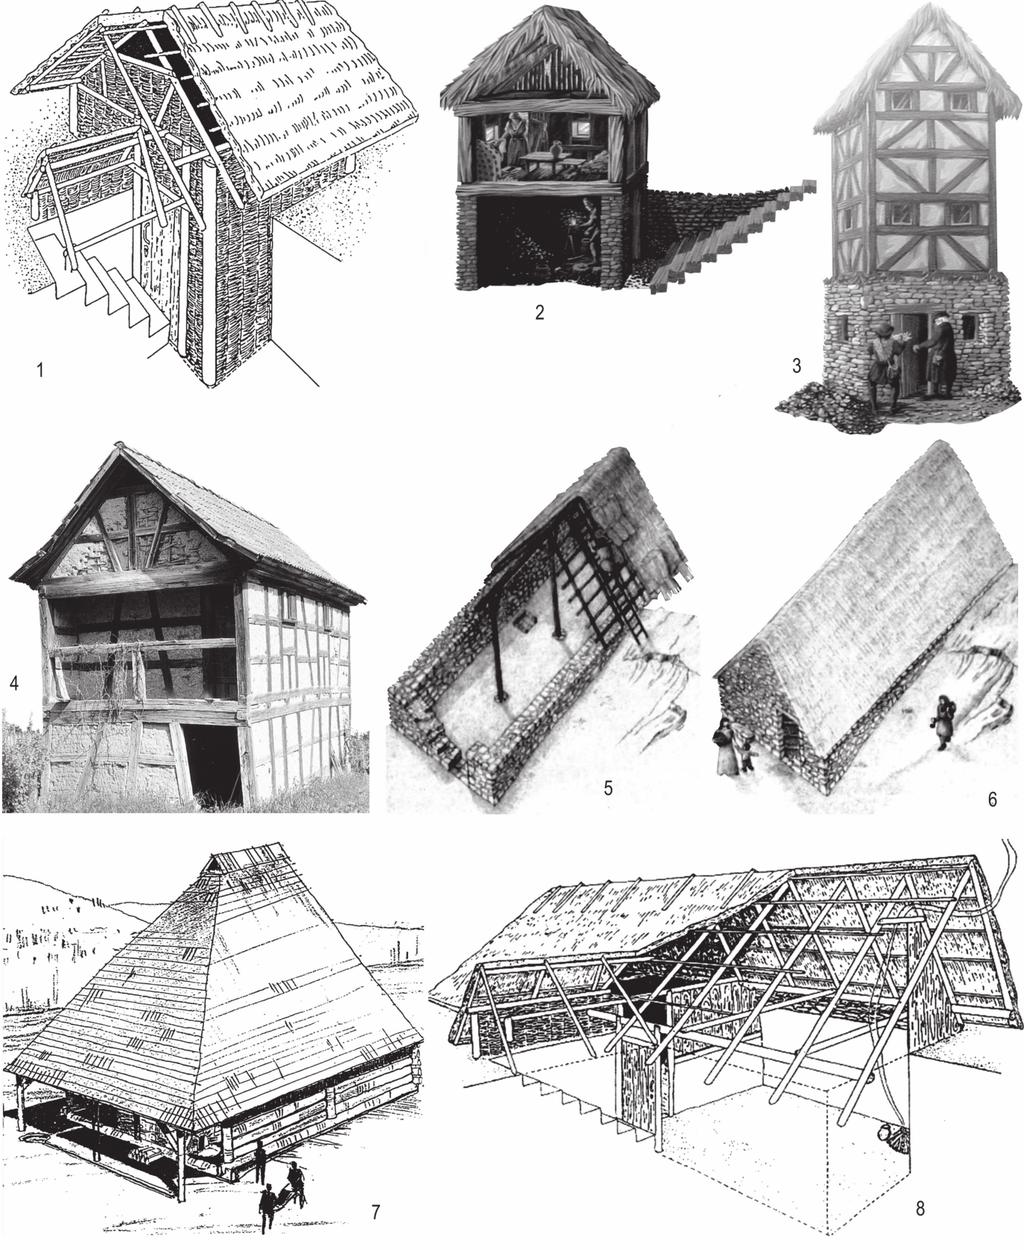 Jihlava Staré Hory Obr. 245. Ukázky rekonstrukčních představ středověkých dřevěných, dřevohliněných anebo kamenných domů v prostředí hornických provozů nebo osad. 1: Schönborn Dreiwerden.